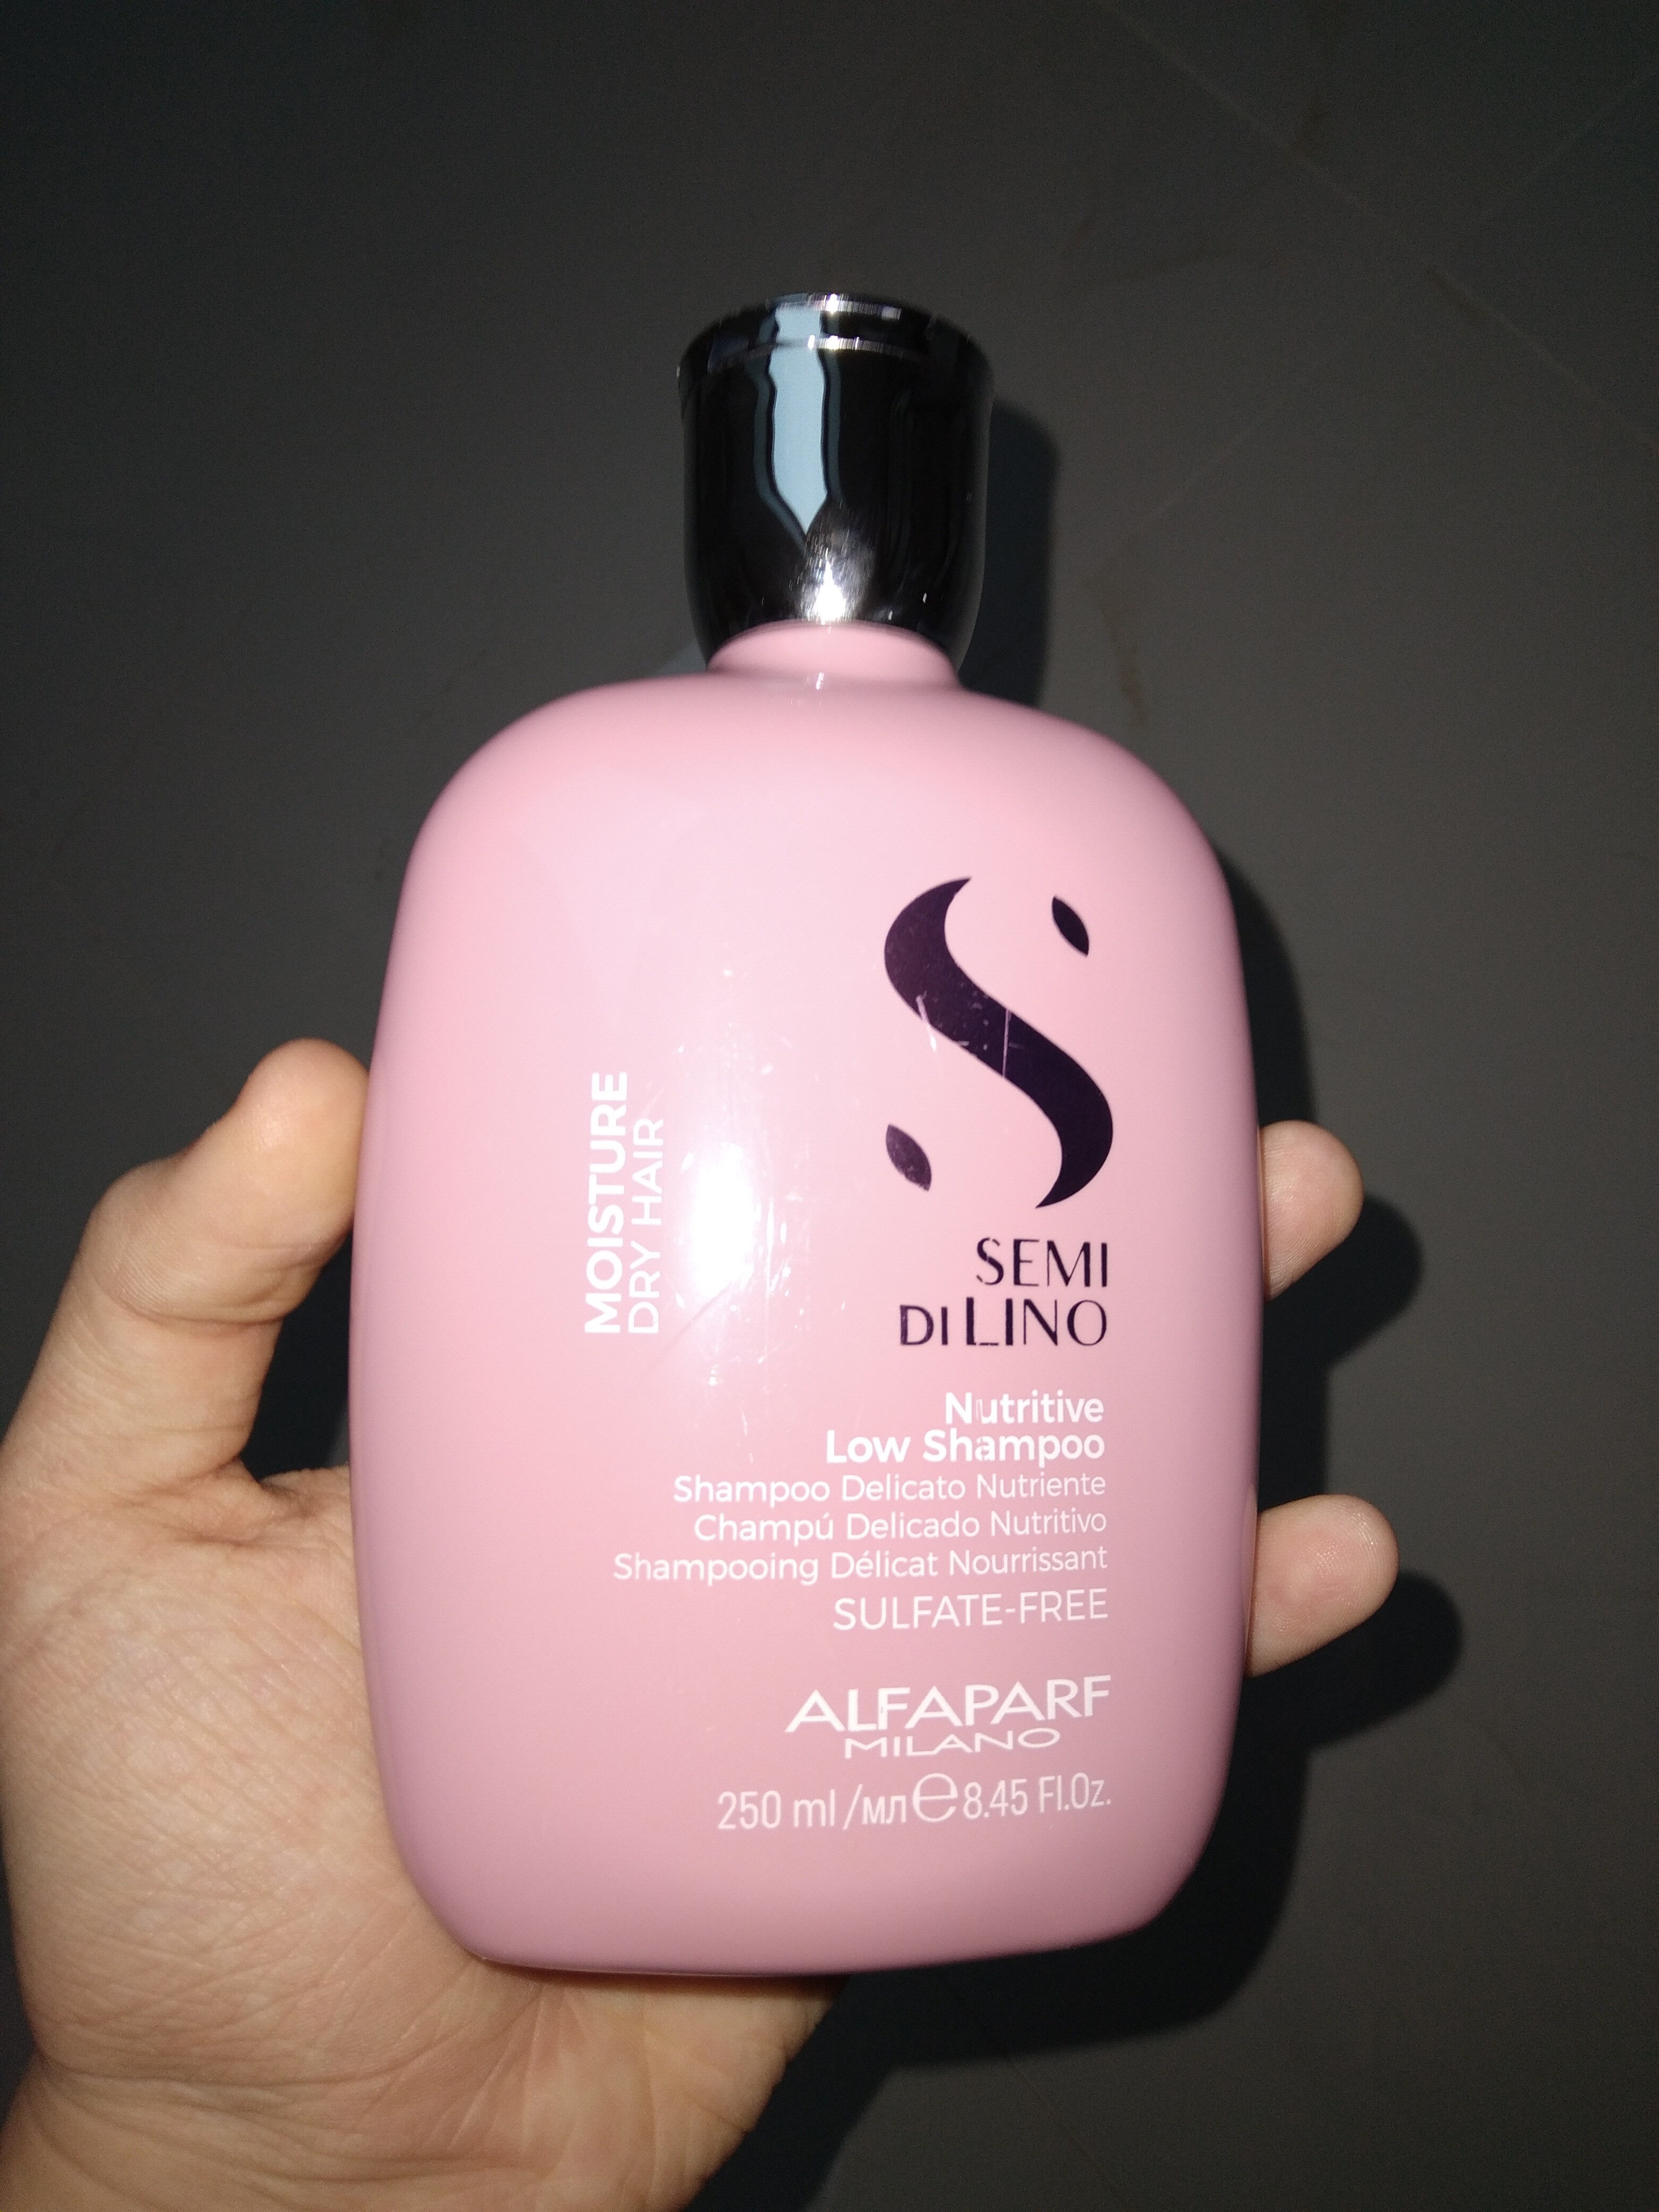 shampoo - Product - en